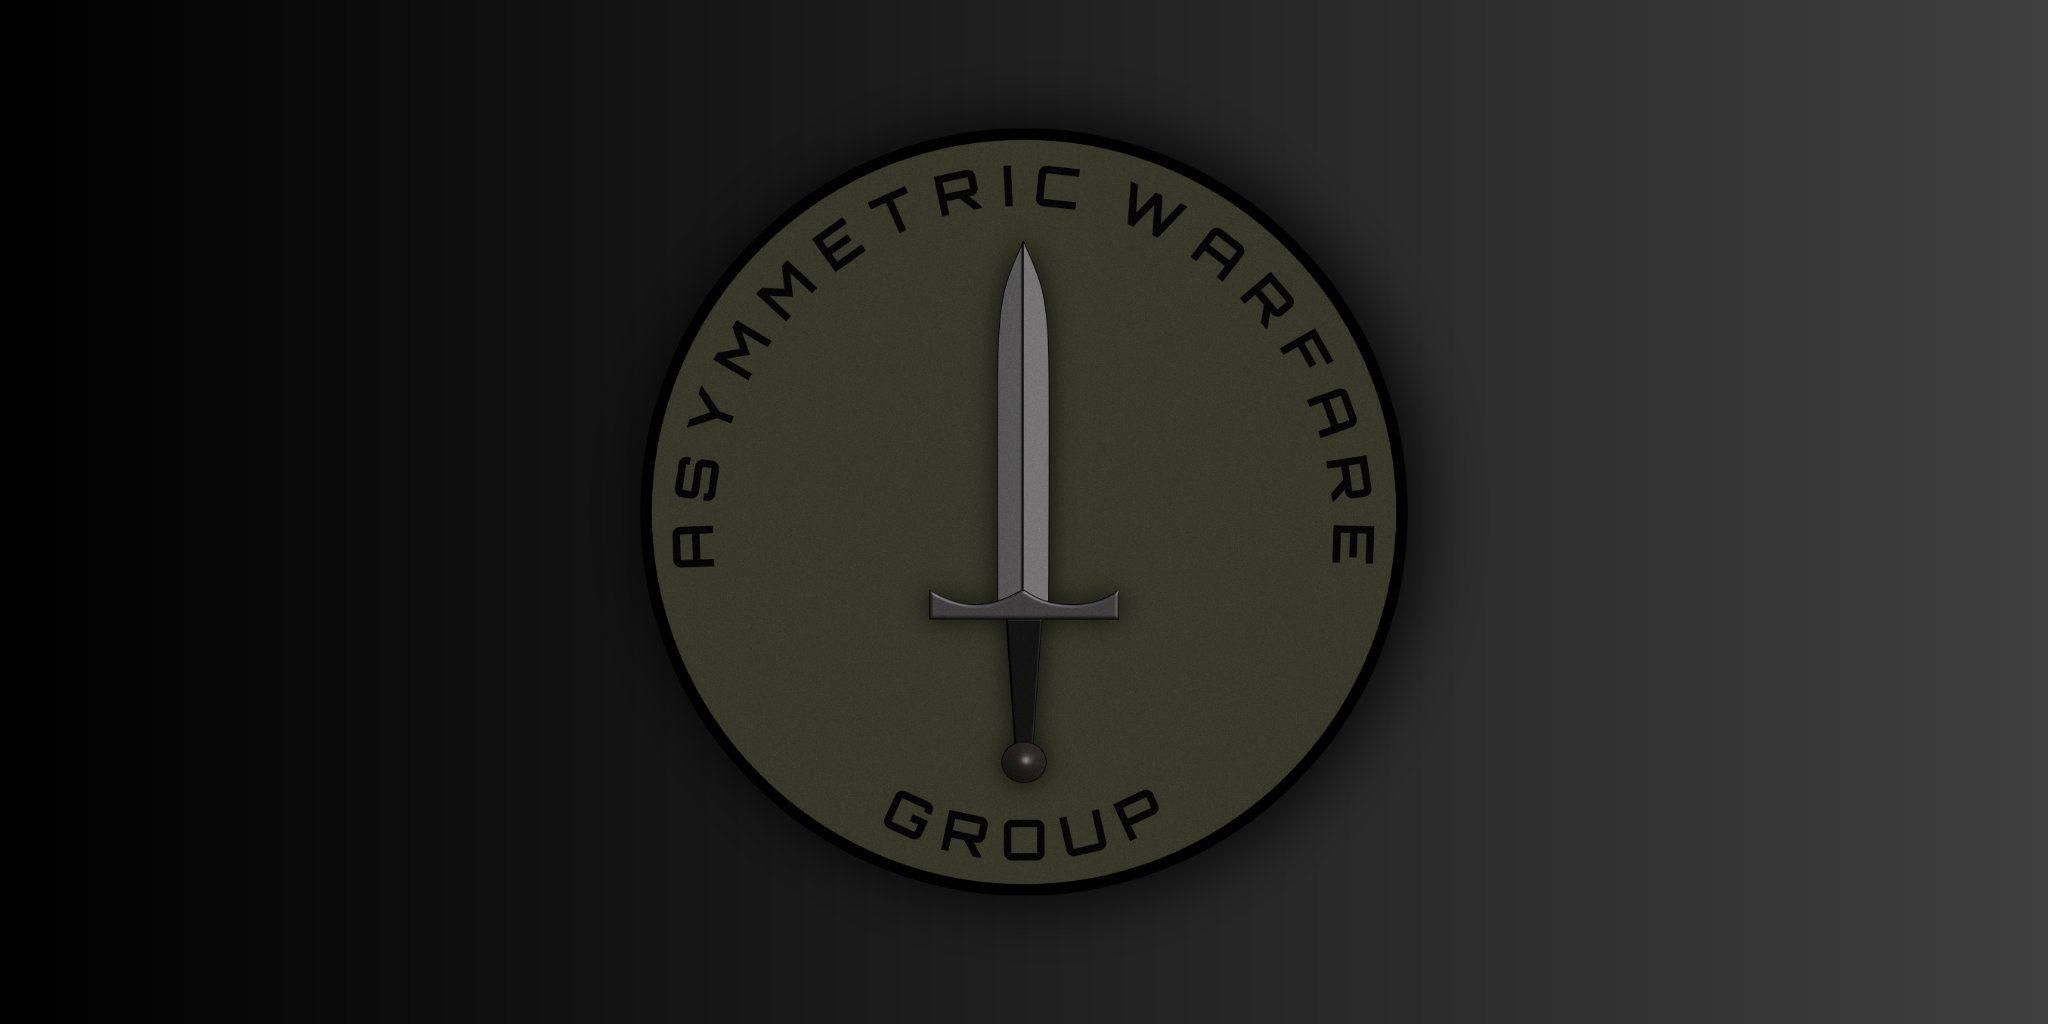 Asymmetric Warfare - Everon II